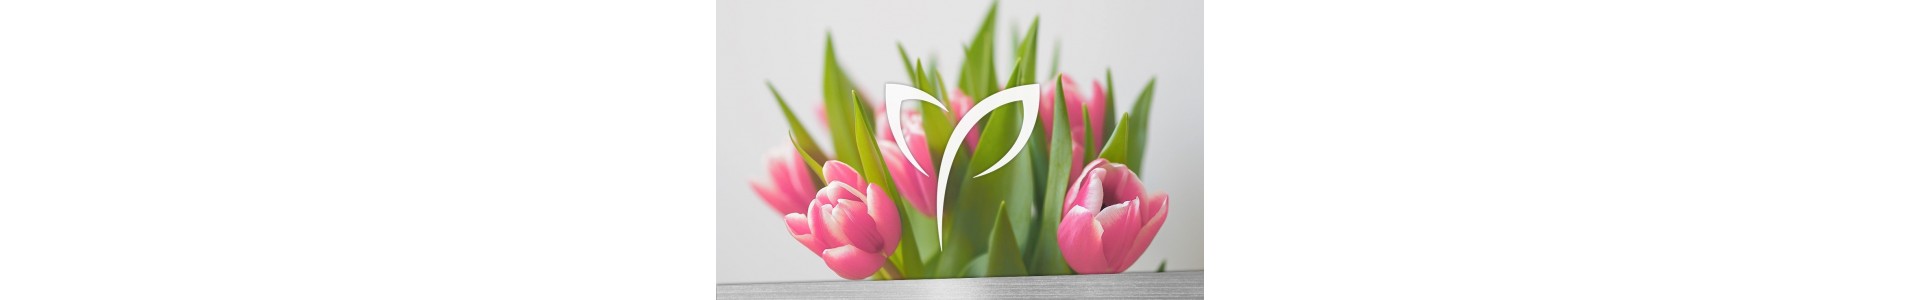 Los tulipanes de la Fiore, siempre frescos y en su máximo esplendor 